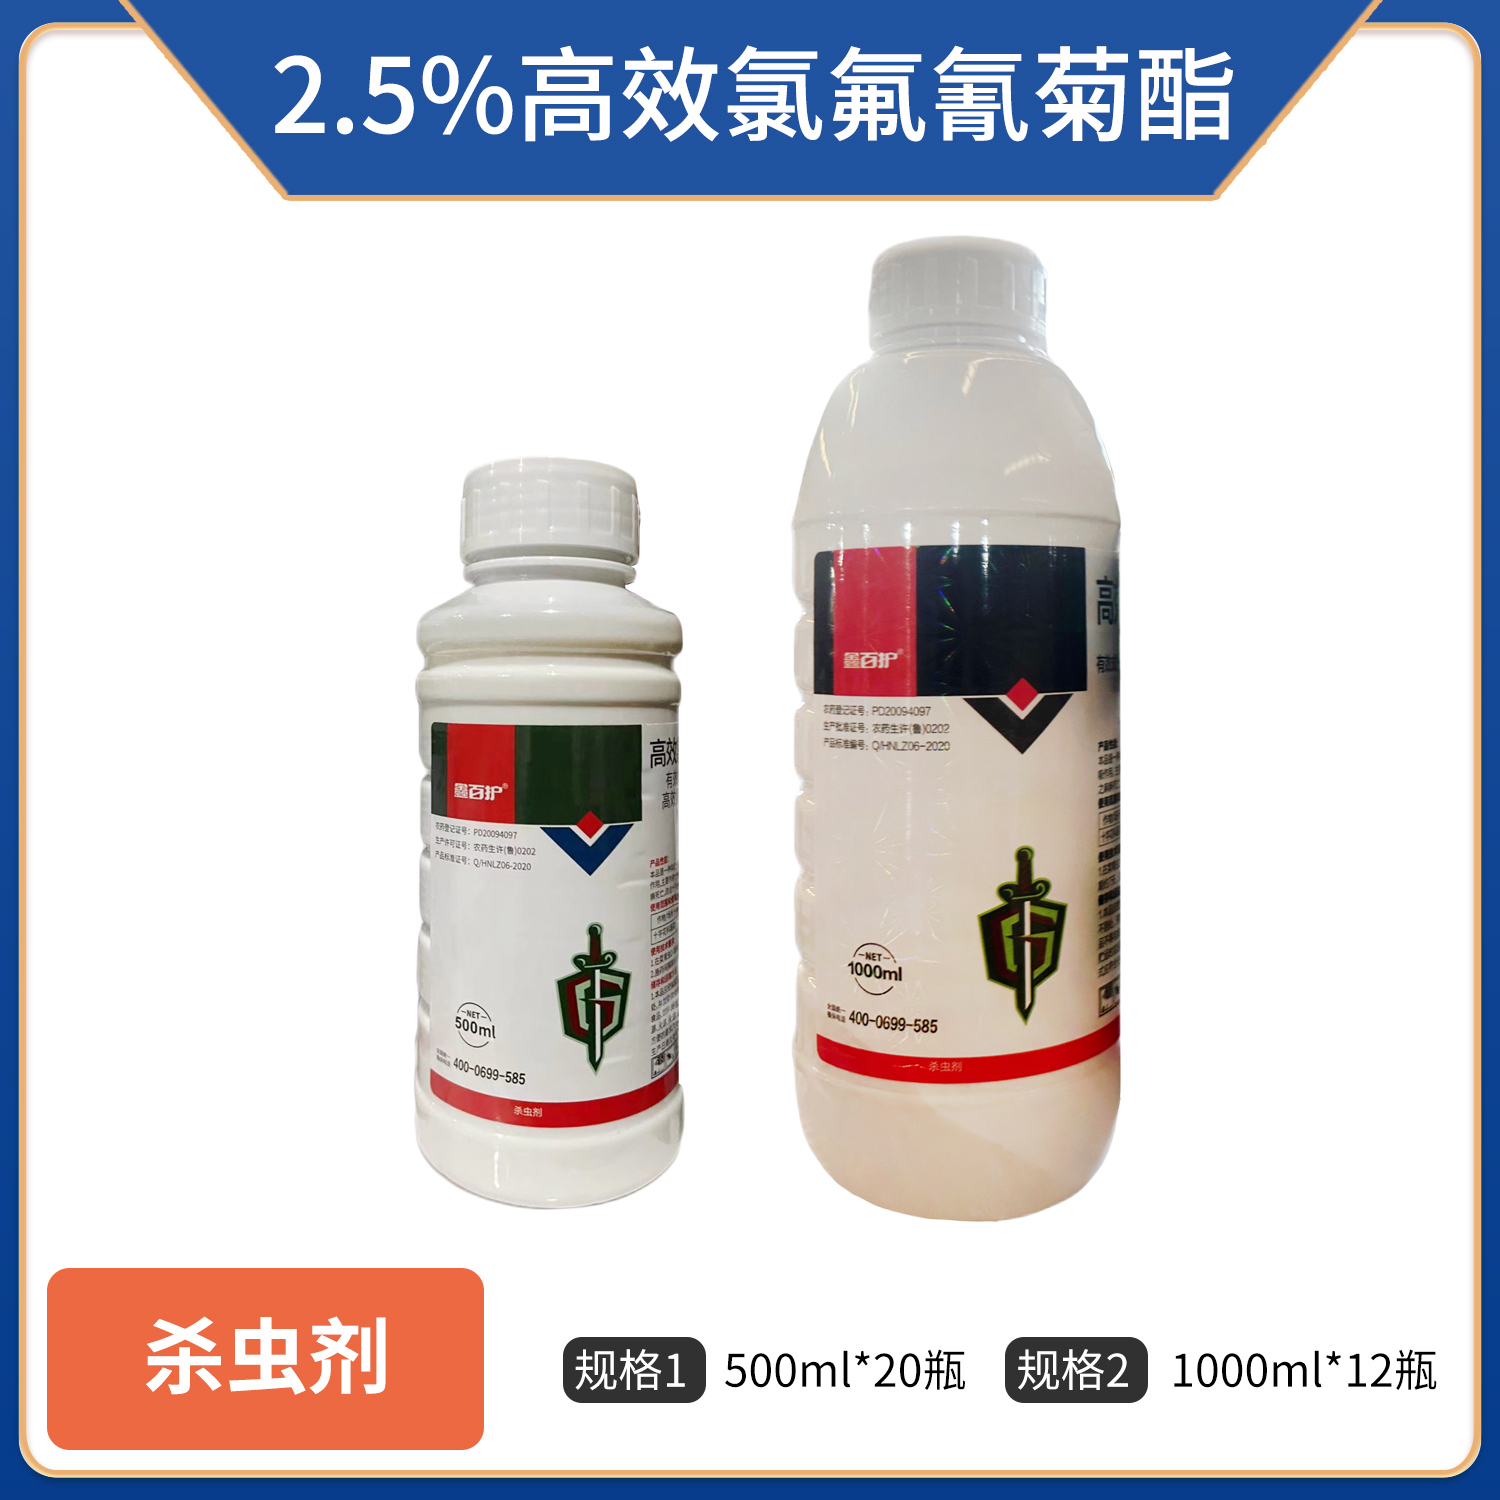 鑫百护-2.5%高效氯氟氰菊酯